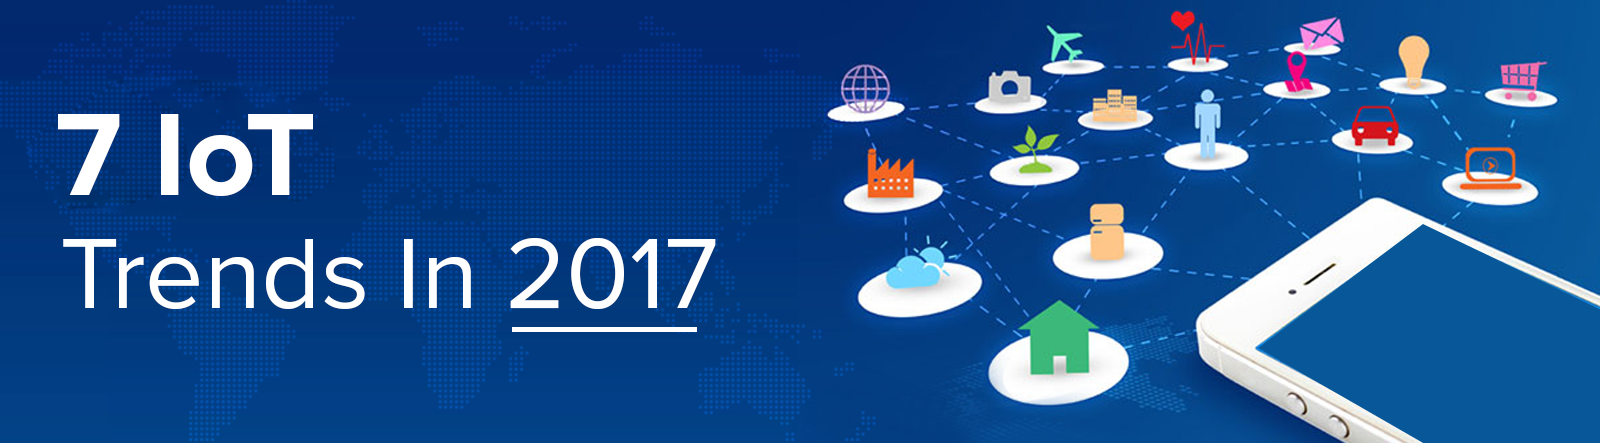 IoT Trends 2017